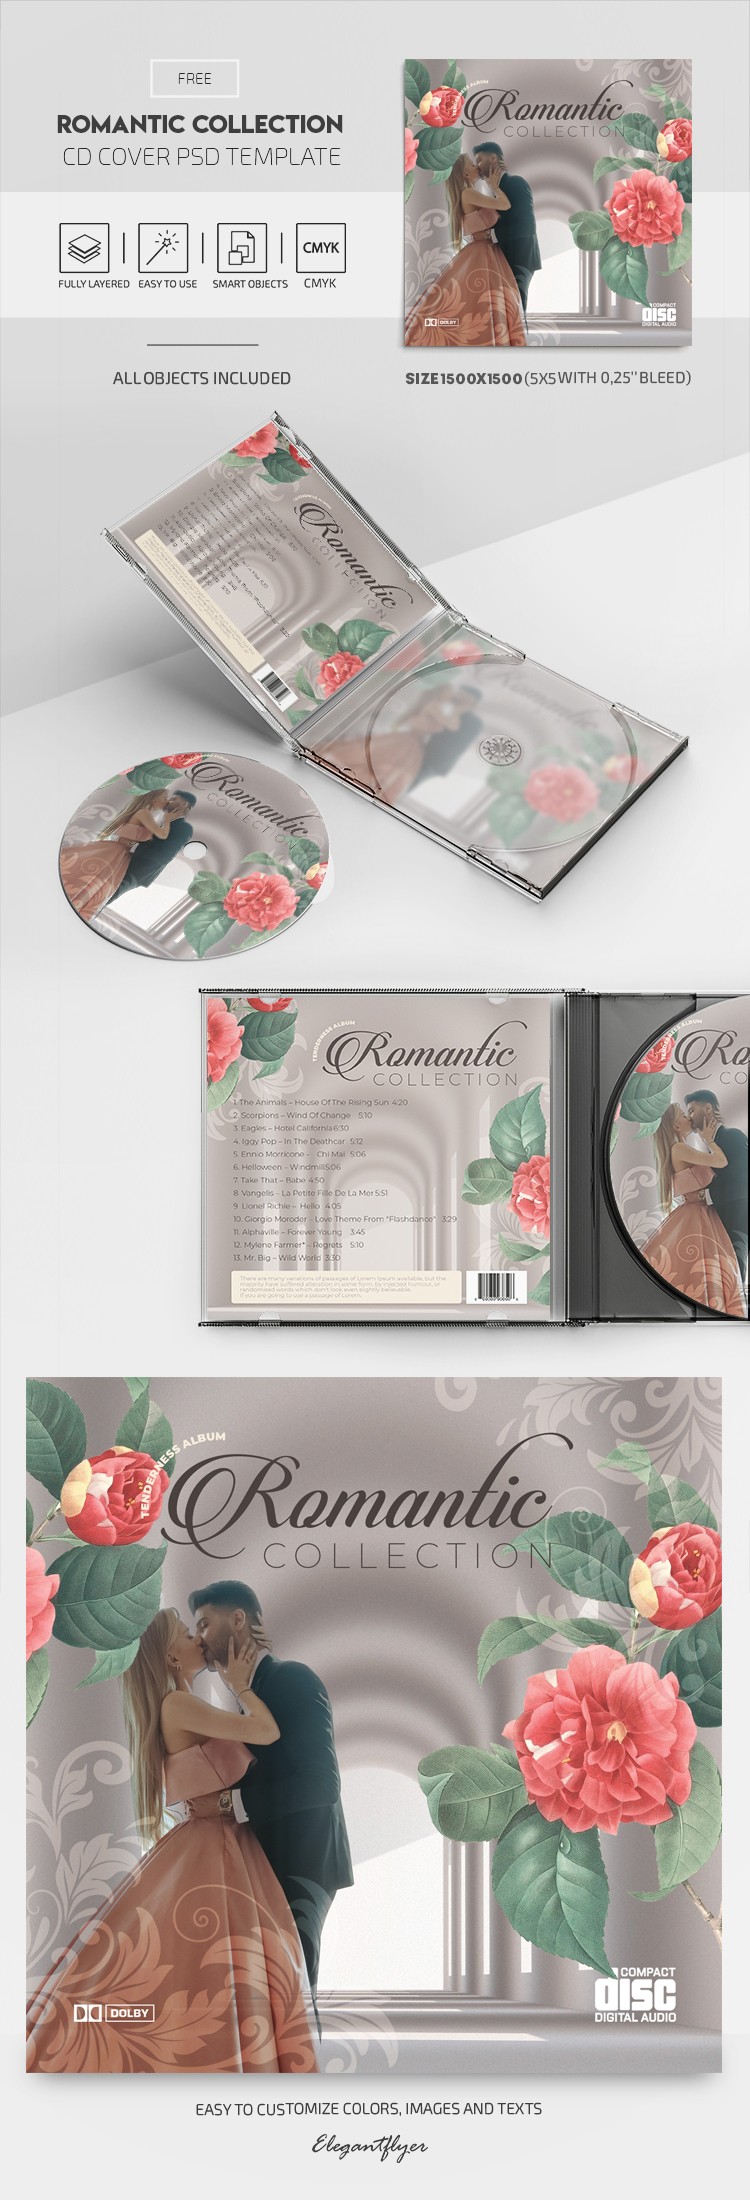 Copertina del CD della Collezione Romantica by ElegantFlyer